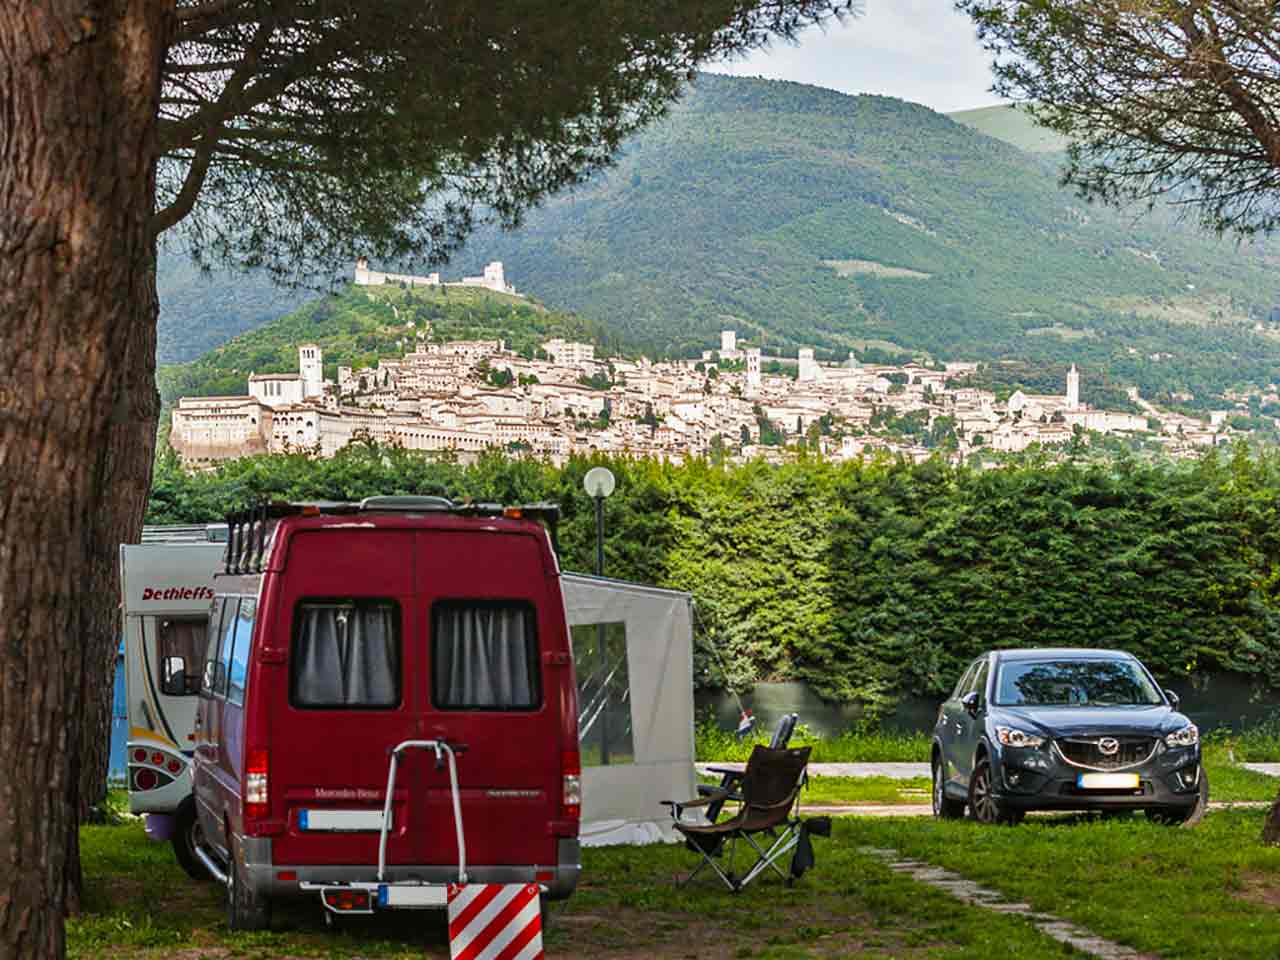 Green Village Assisi: Il panorama della città di Assisi dal campeggio